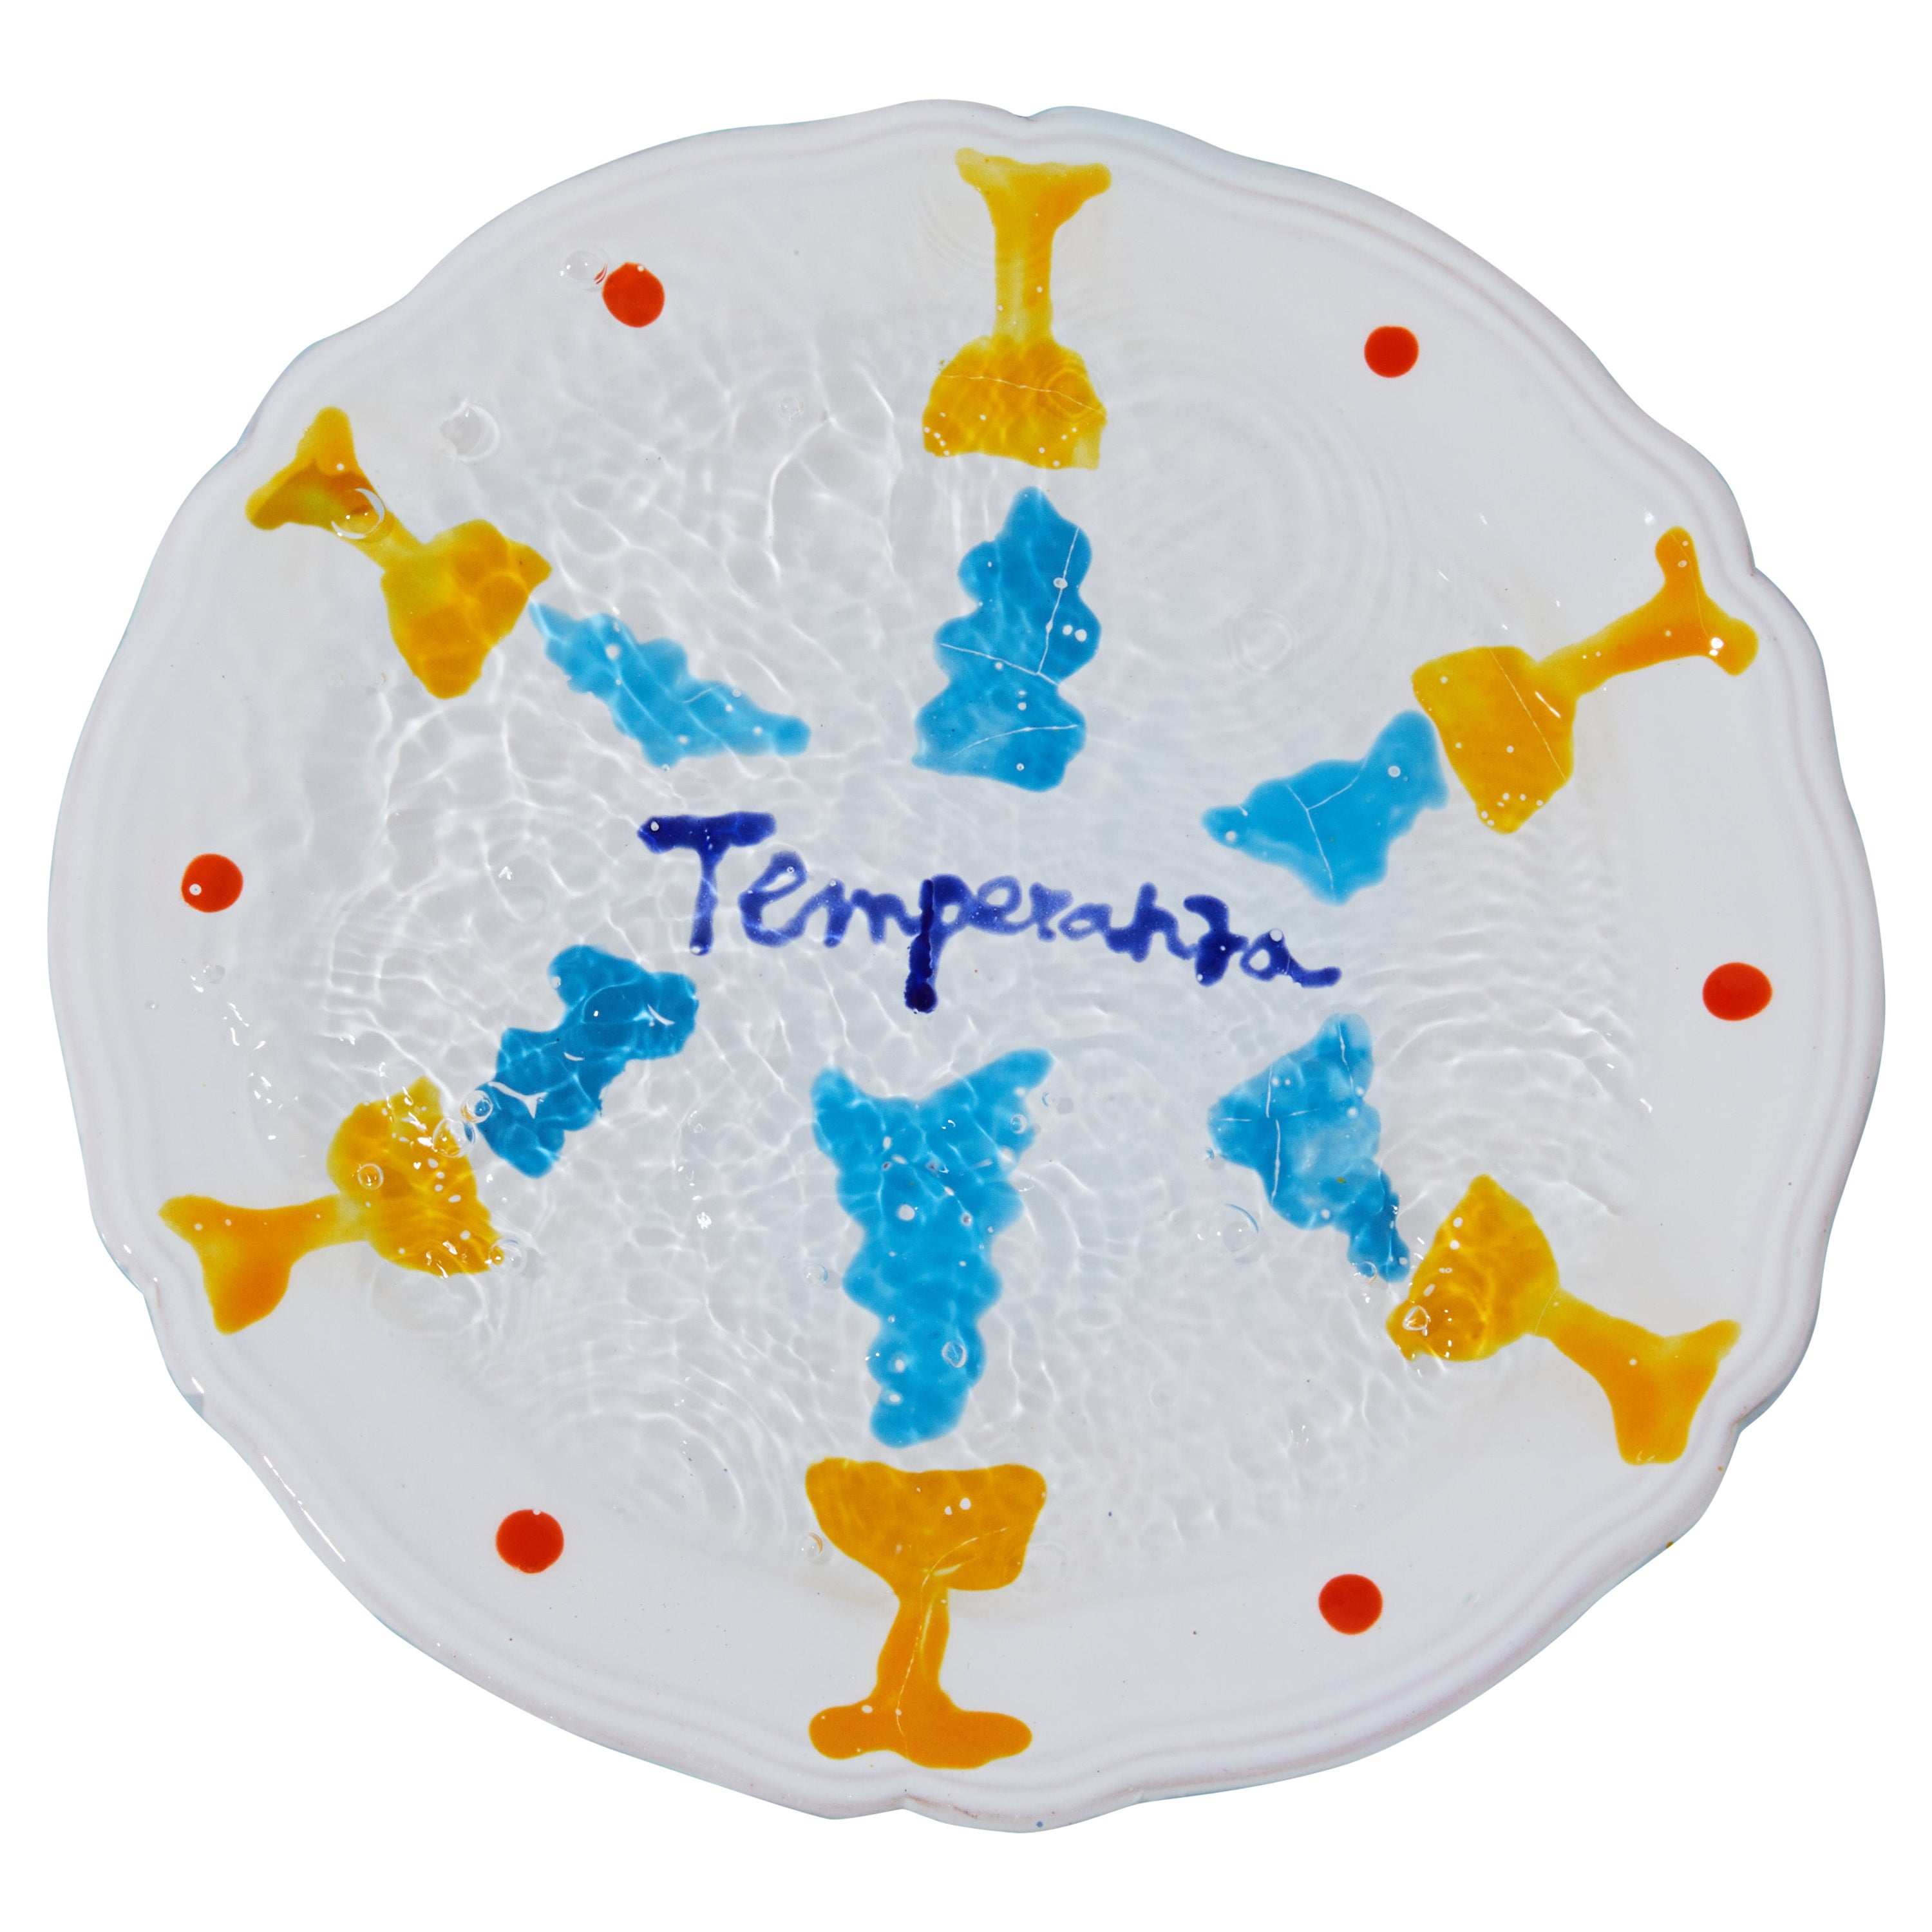 Temperanza-Tablett des 21. Jahrhunderts, handgefertigt und handglasiert in Italien von Ilaria Bianchi